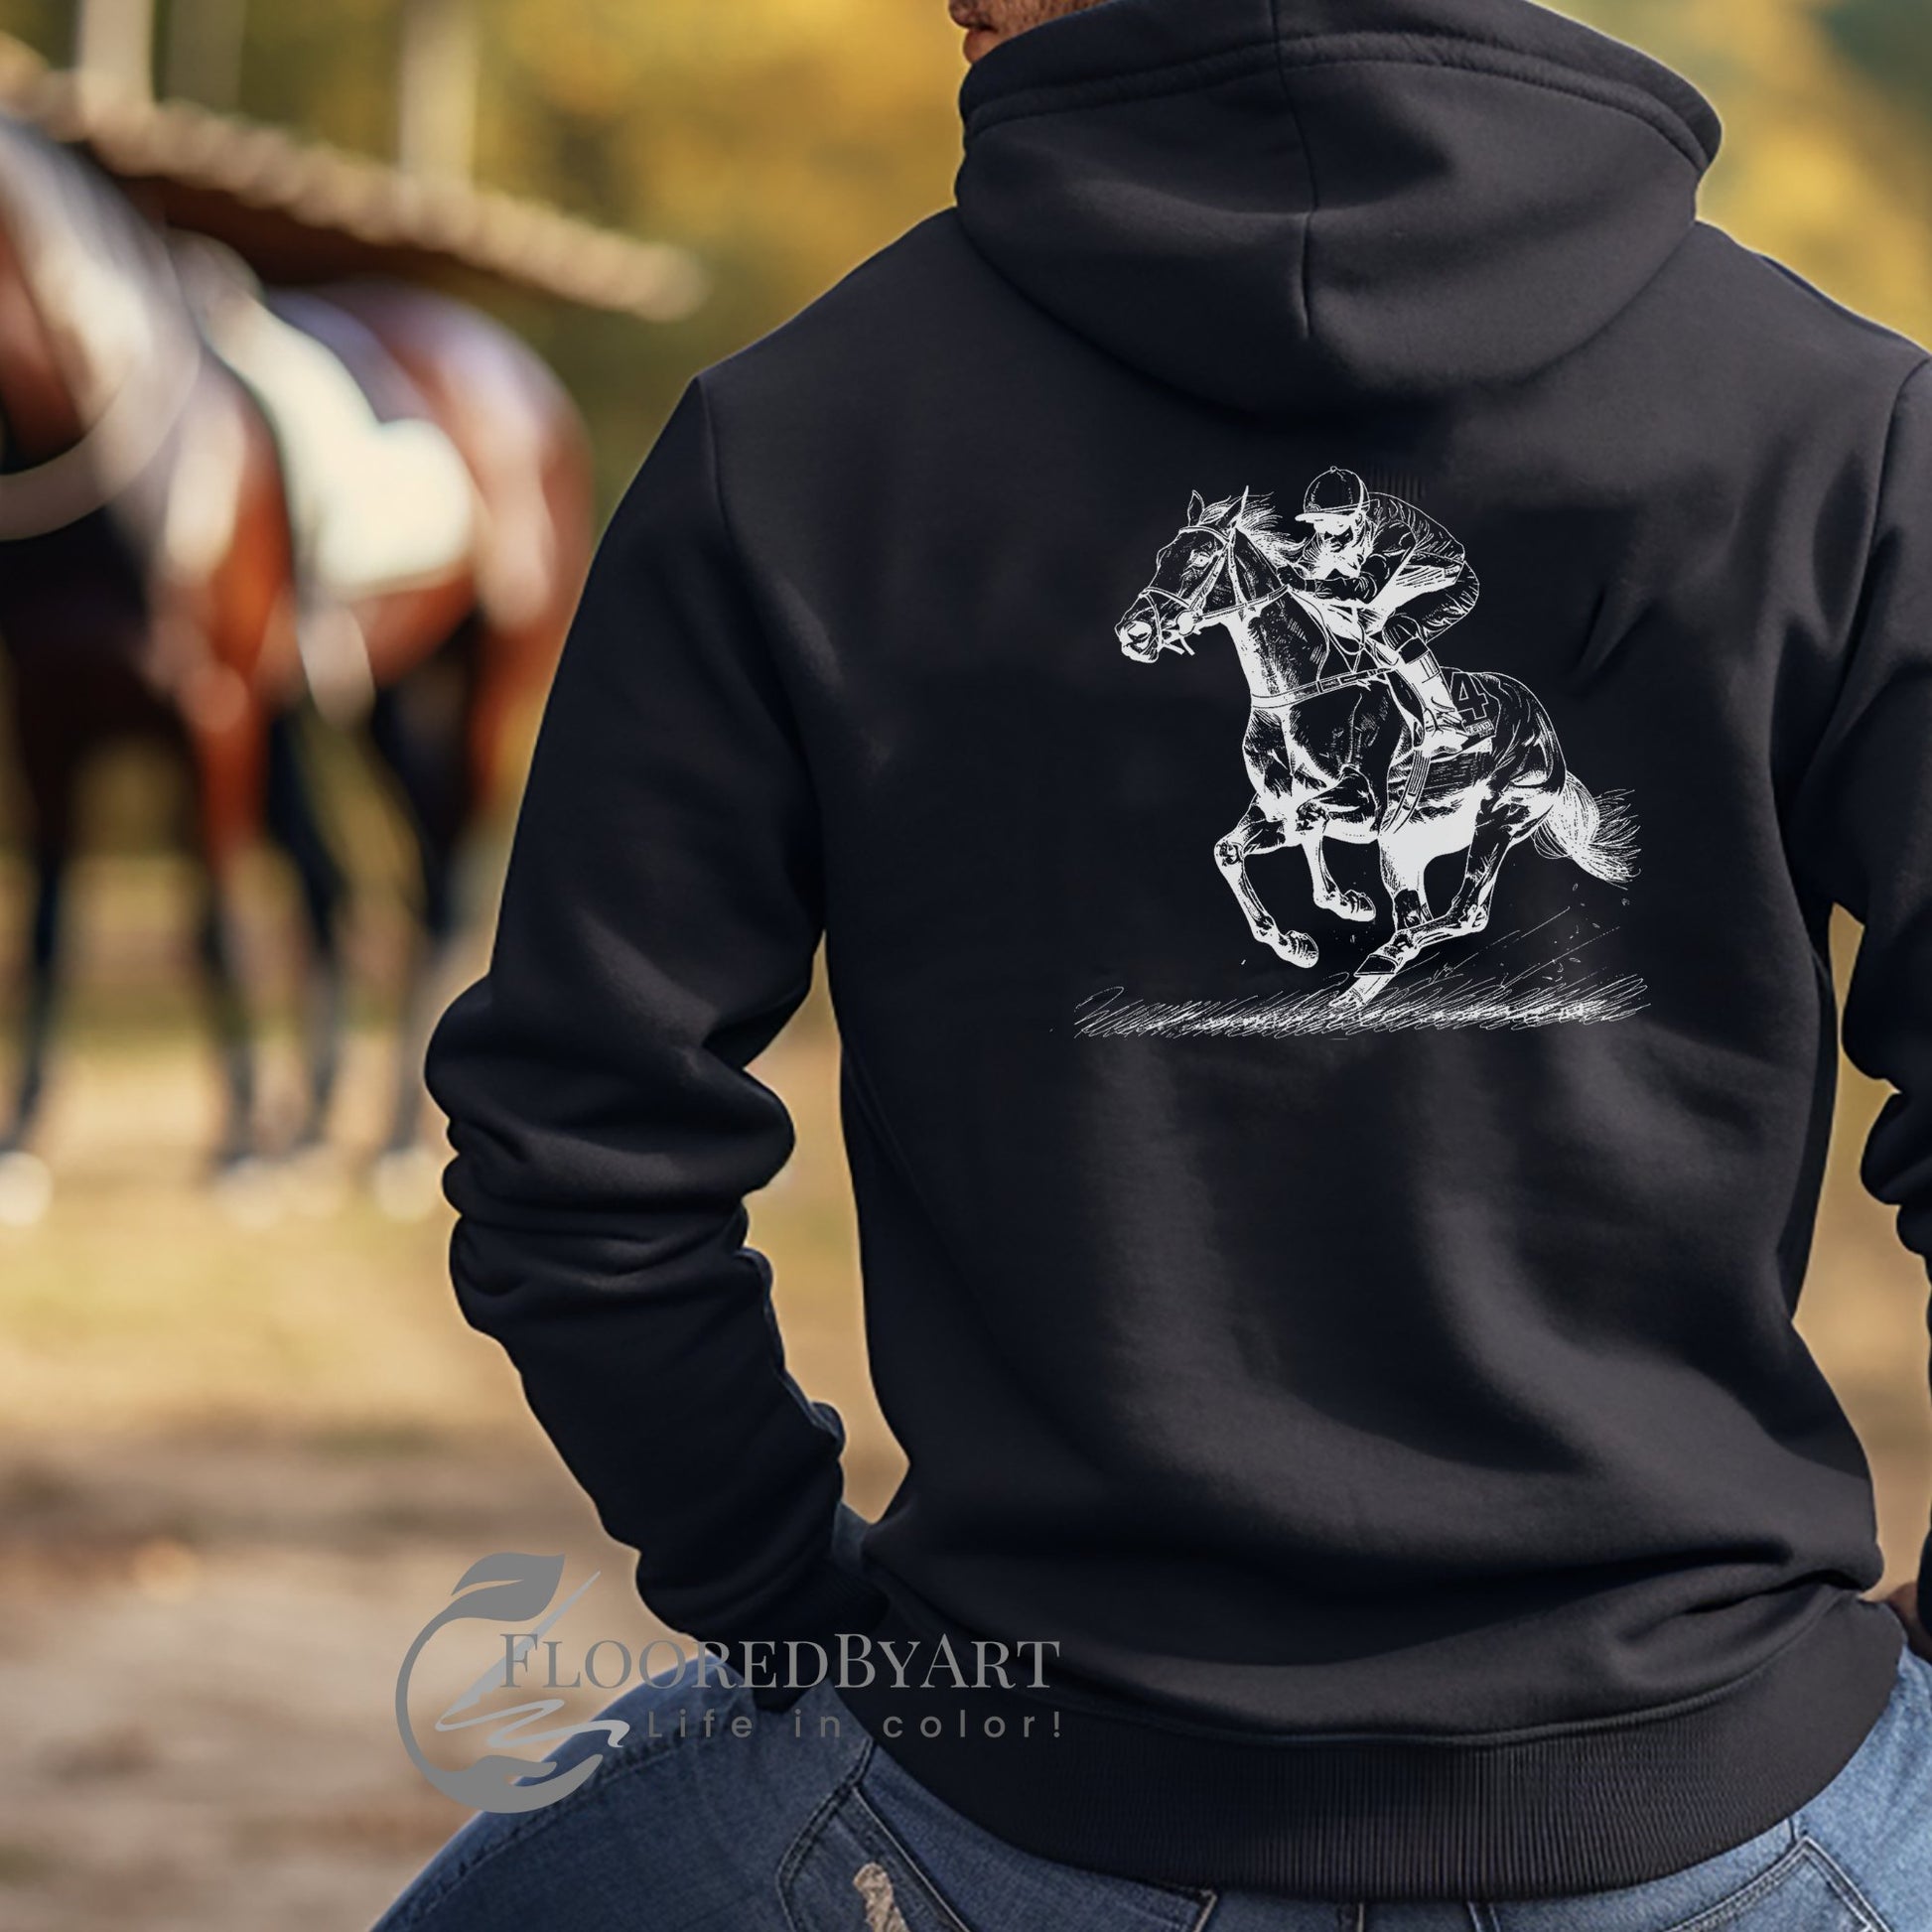 An Original Horseracing Full Zip Jacket, Black Marker Drawing, Full Jockey and Horse - FlooredByArt